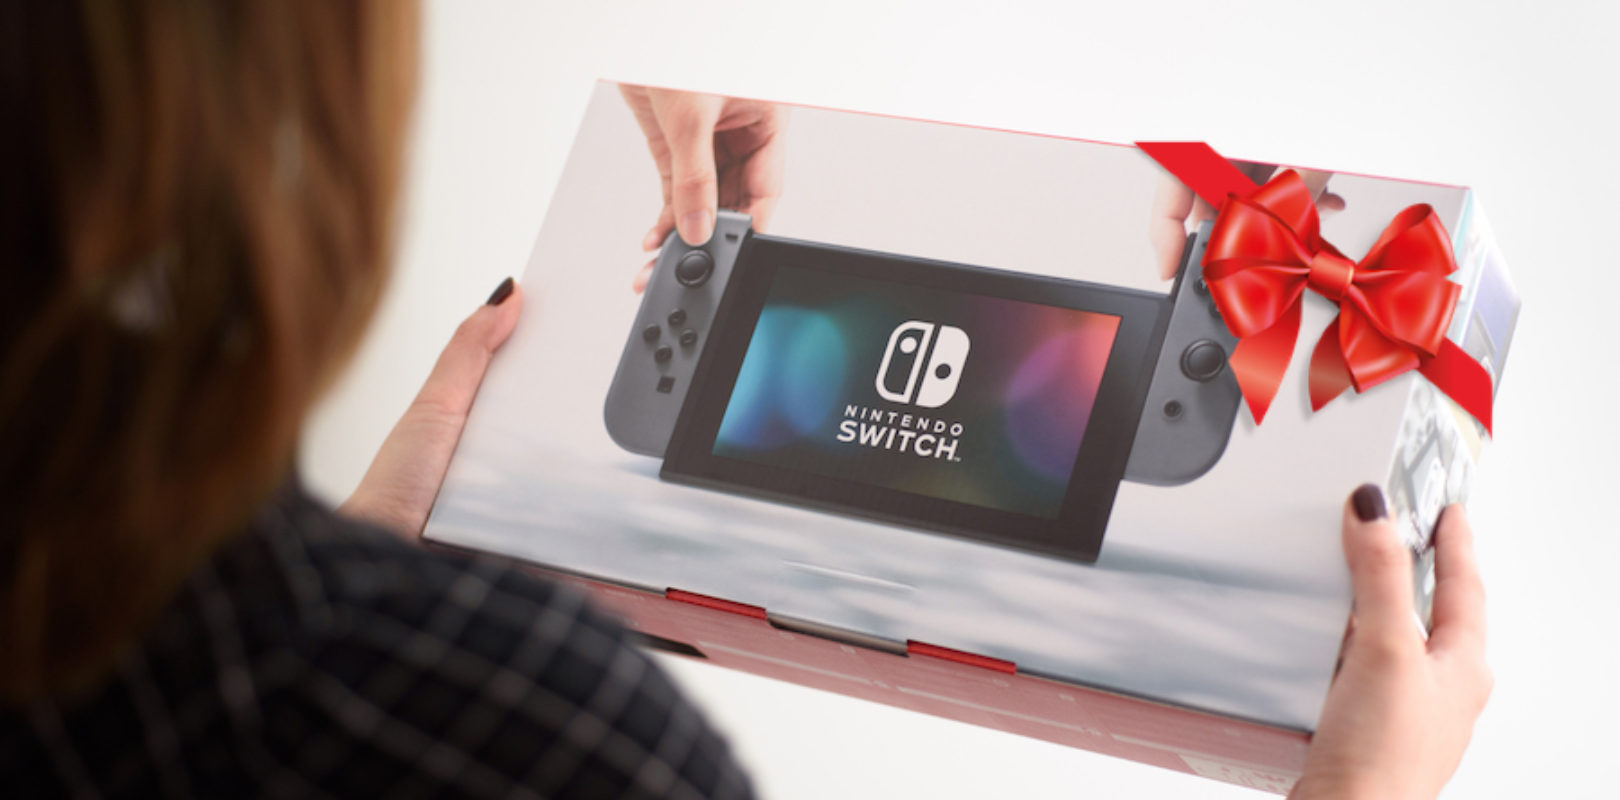 Foto Di Giochi Di Natale.Regali Di Natale 2018 Migliori Giochi Per Nintendo Switch Nerdlog It